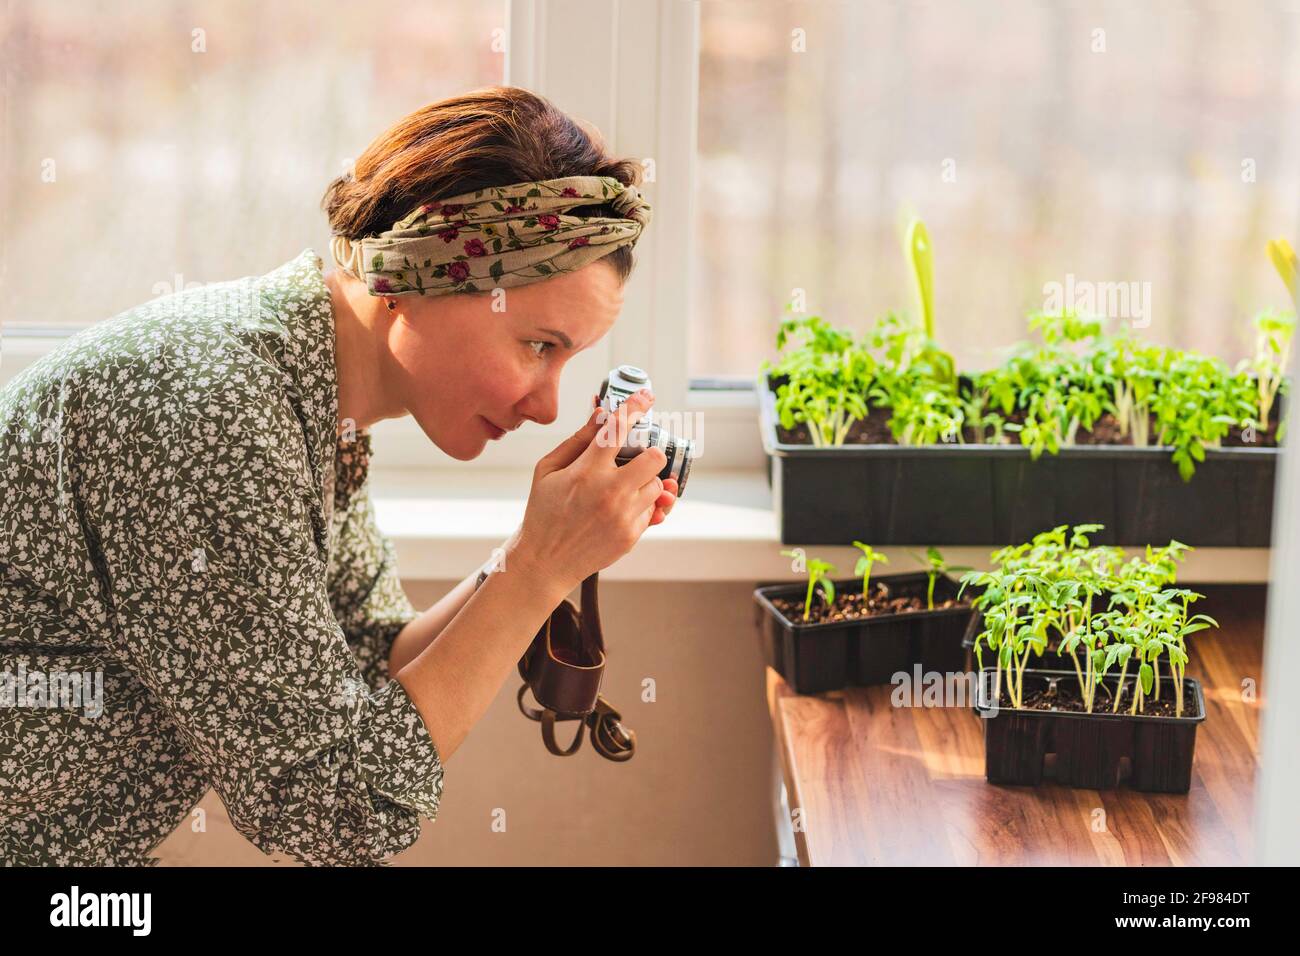 Une femme prend des photos avec un appareil photo rétro des plantes qu'elle a grandi dans son jardin à la maison pour son blog. Banque D'Images